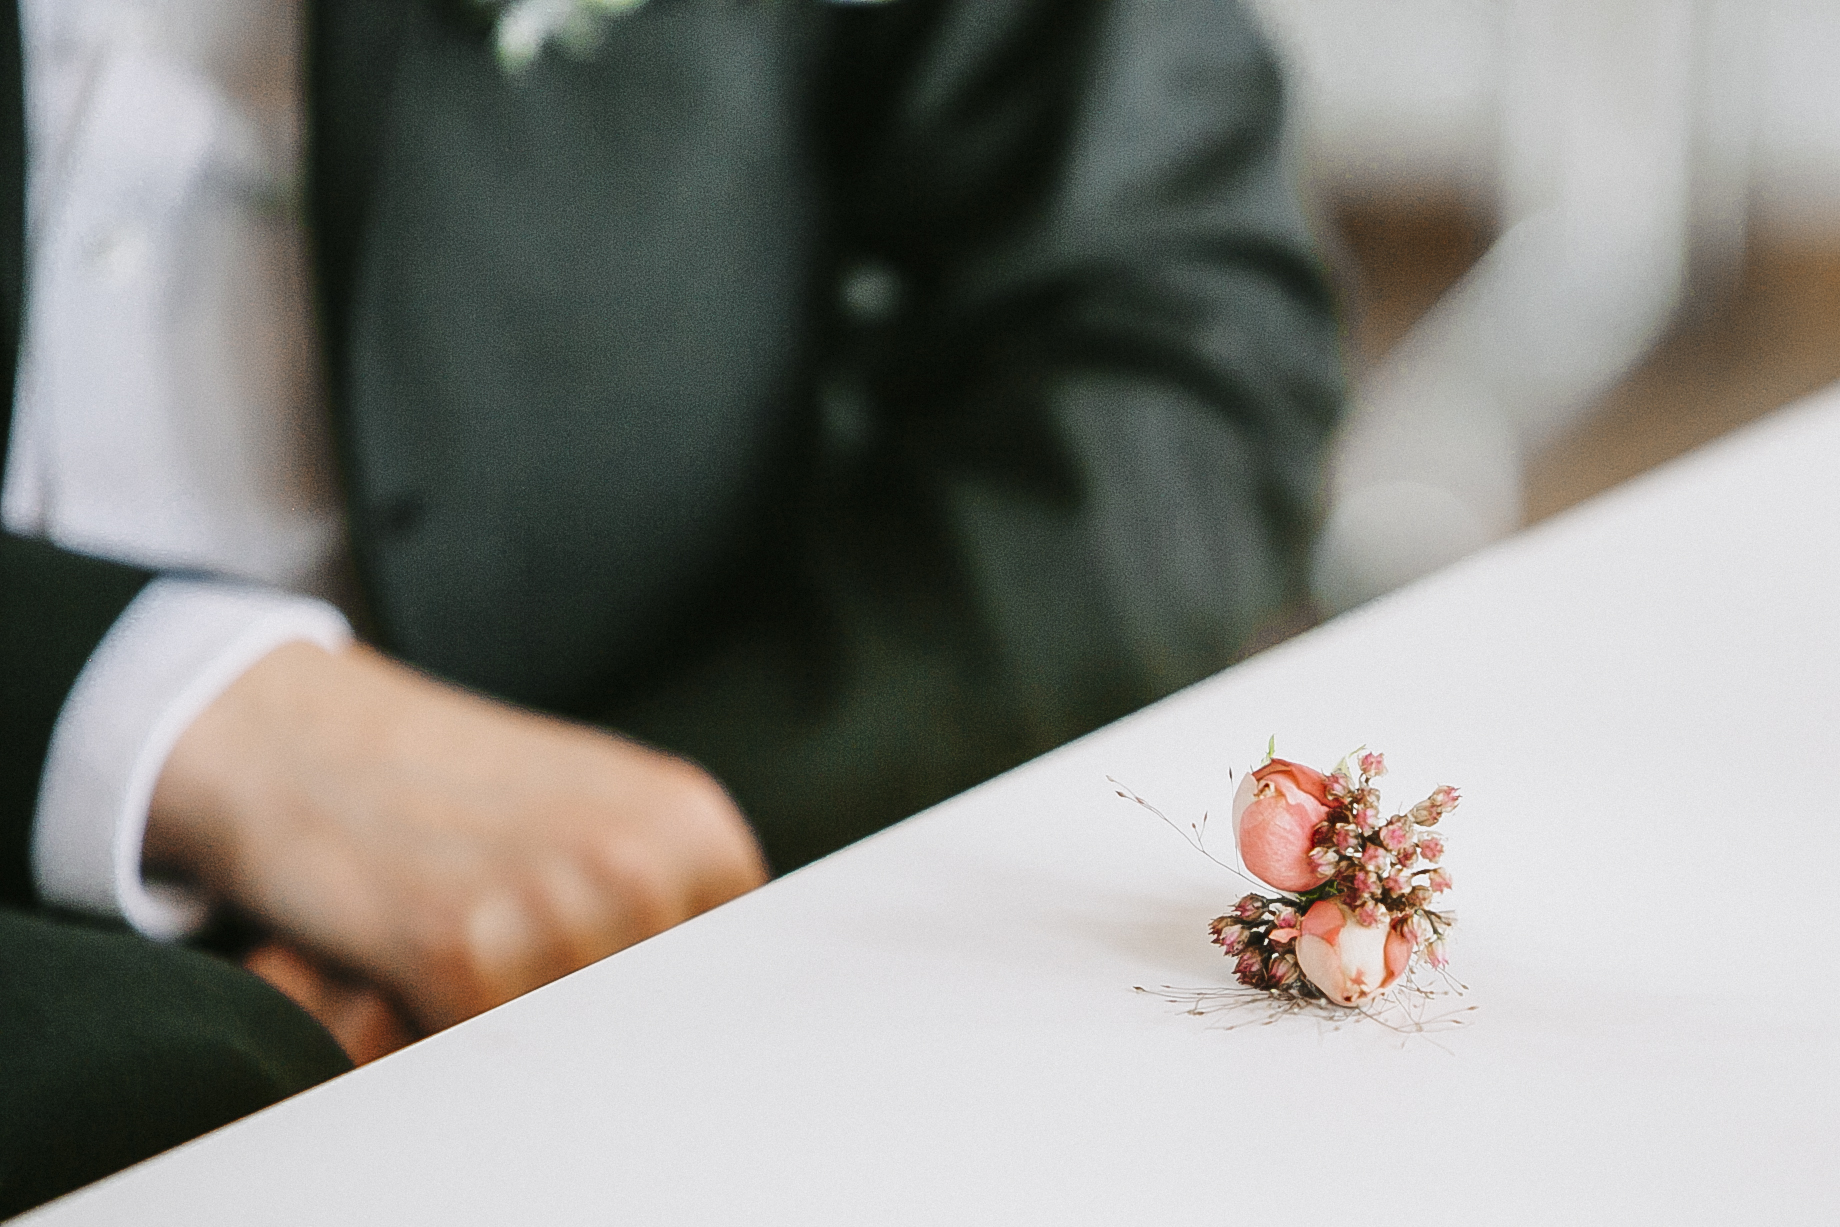 Detailaufnahme von einem sehr kleinen Blumengesteck was dem Bräutigam gehört um in den sakko einzustecken. Kleine Rosen in Rose.